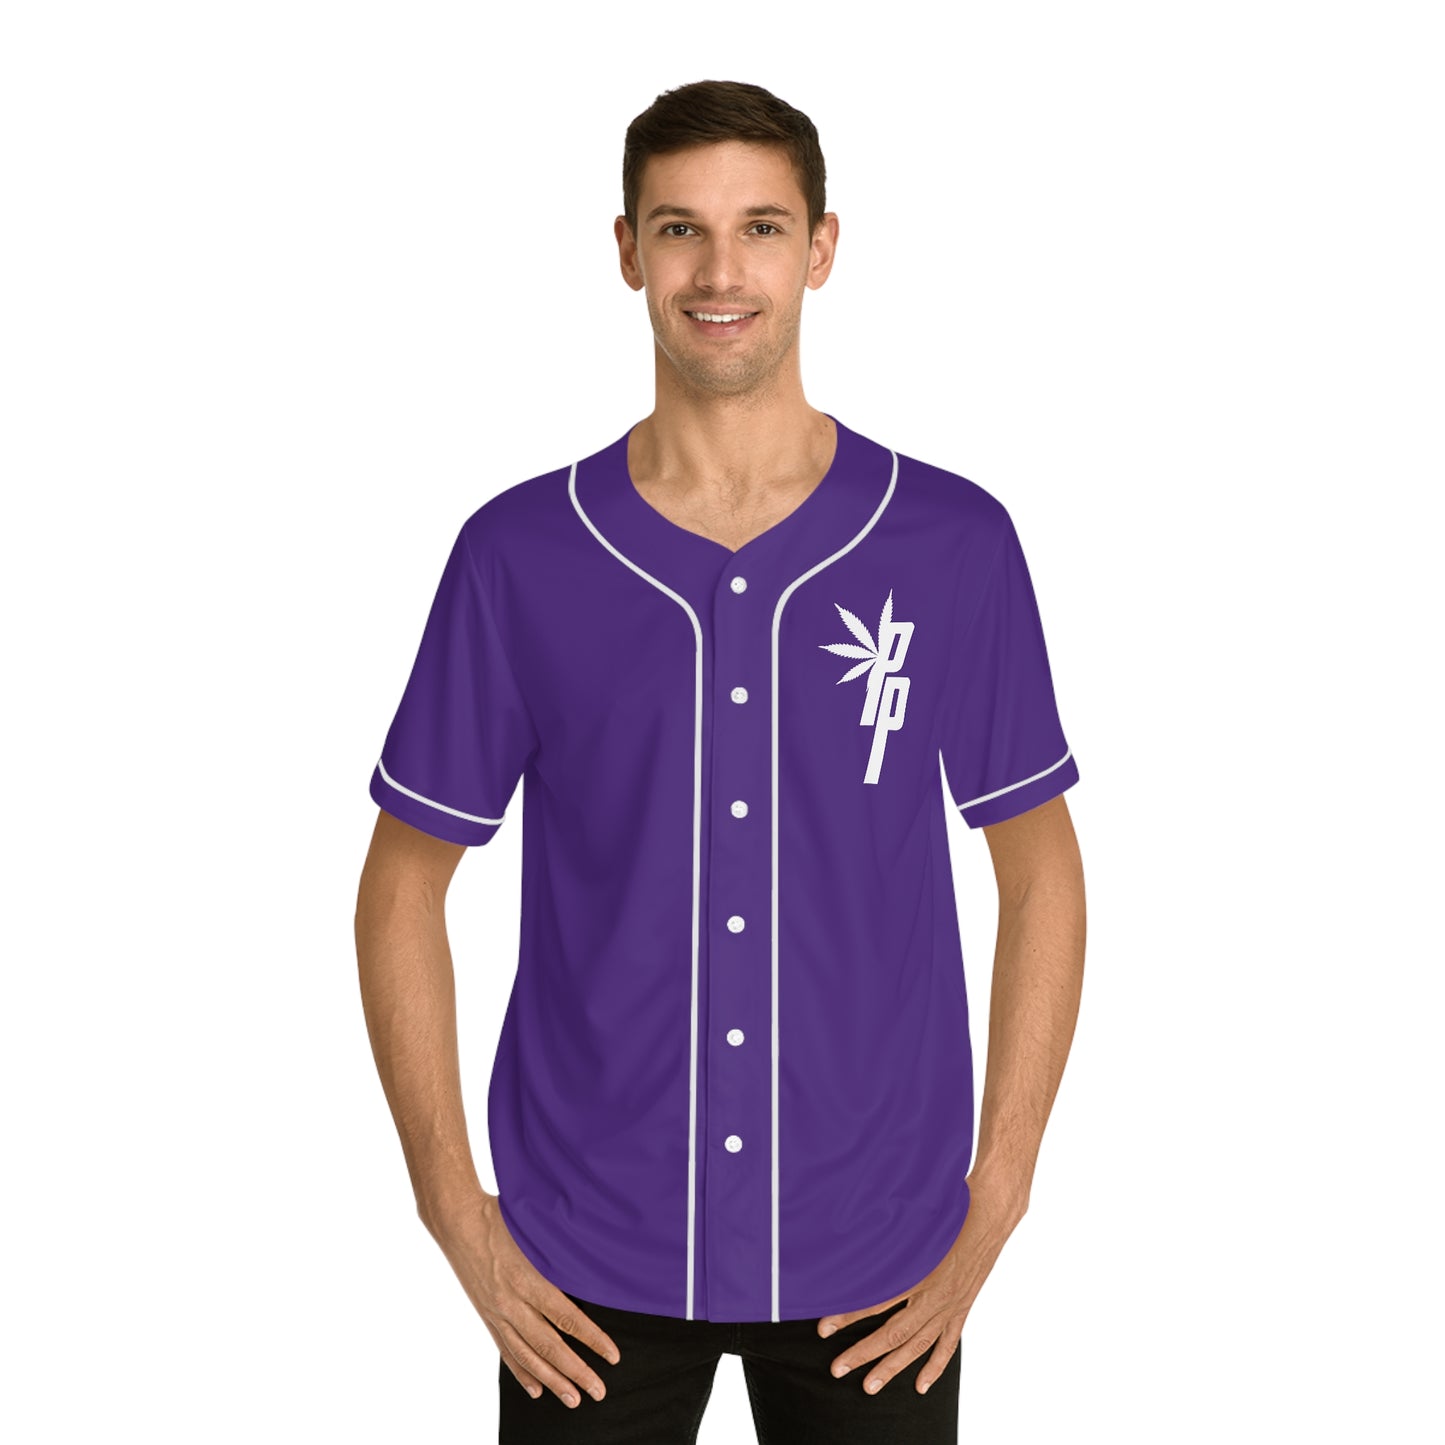 Peter Purple Baseball Jersey